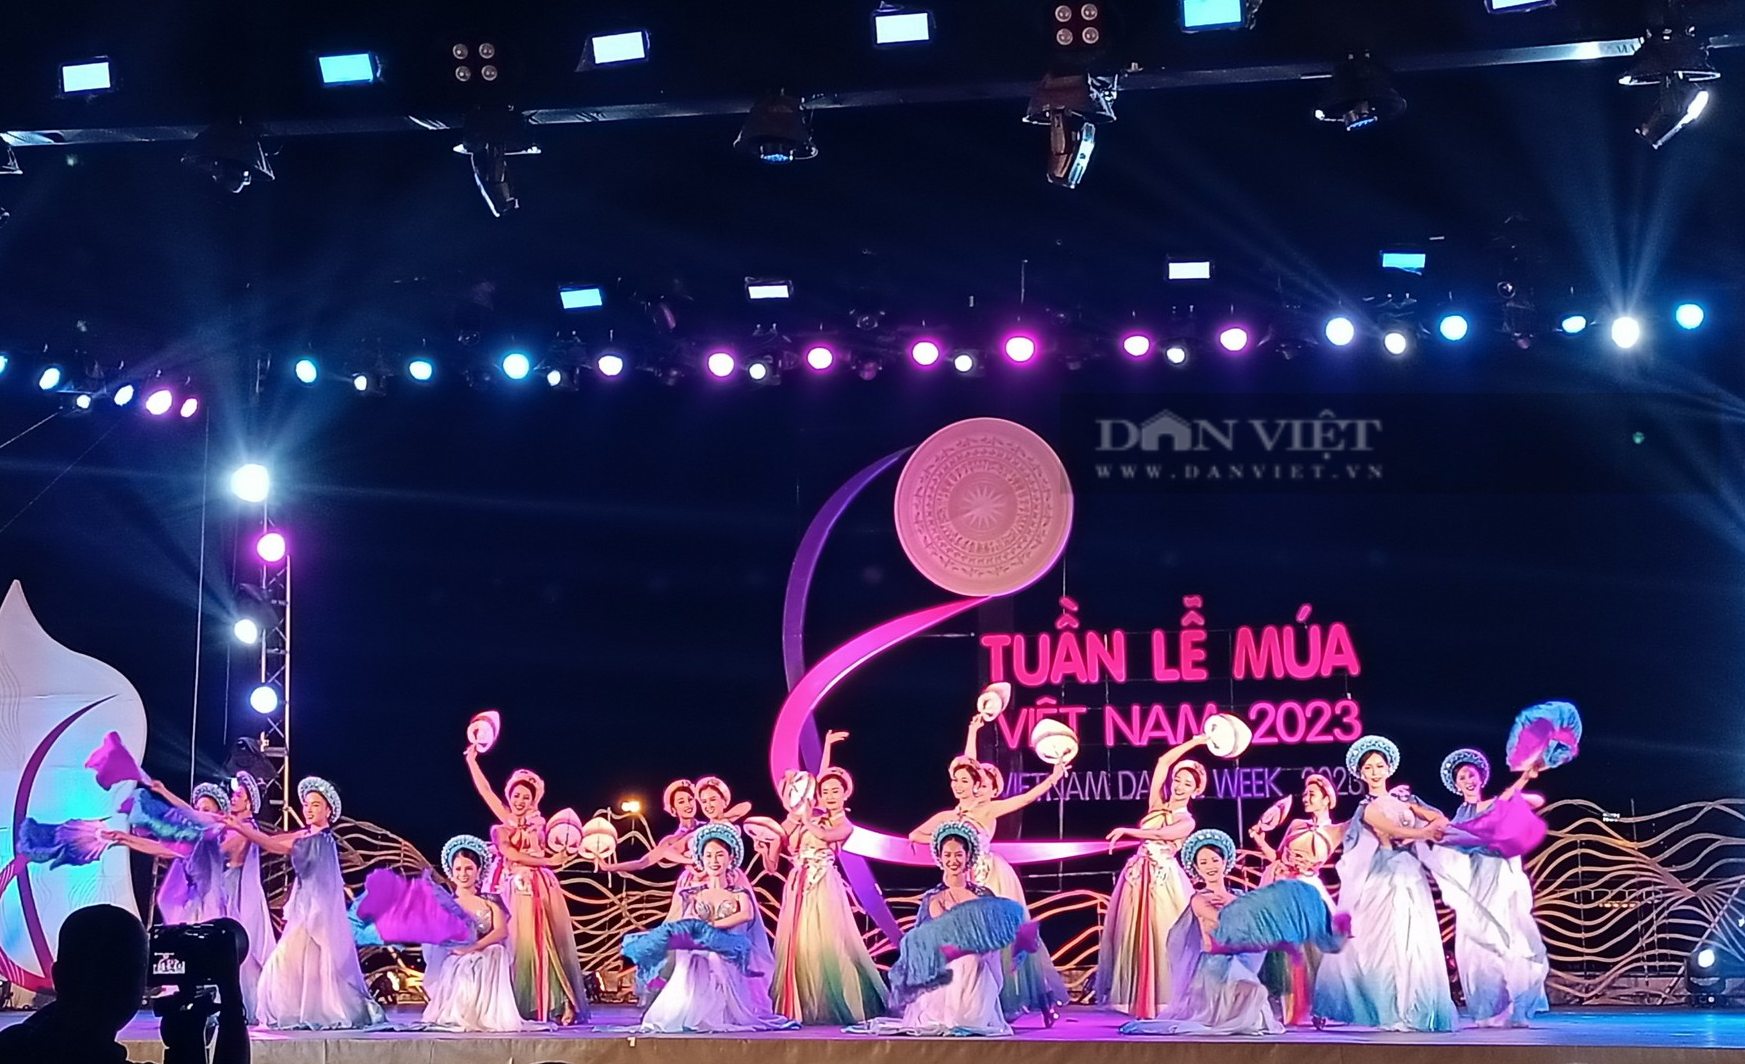 Tuần lễ Múa Việt Nam năm 2023: Ra mắt vũ điệu khiến ai xem cũng phải hào hứng tham gia  - Ảnh 2.